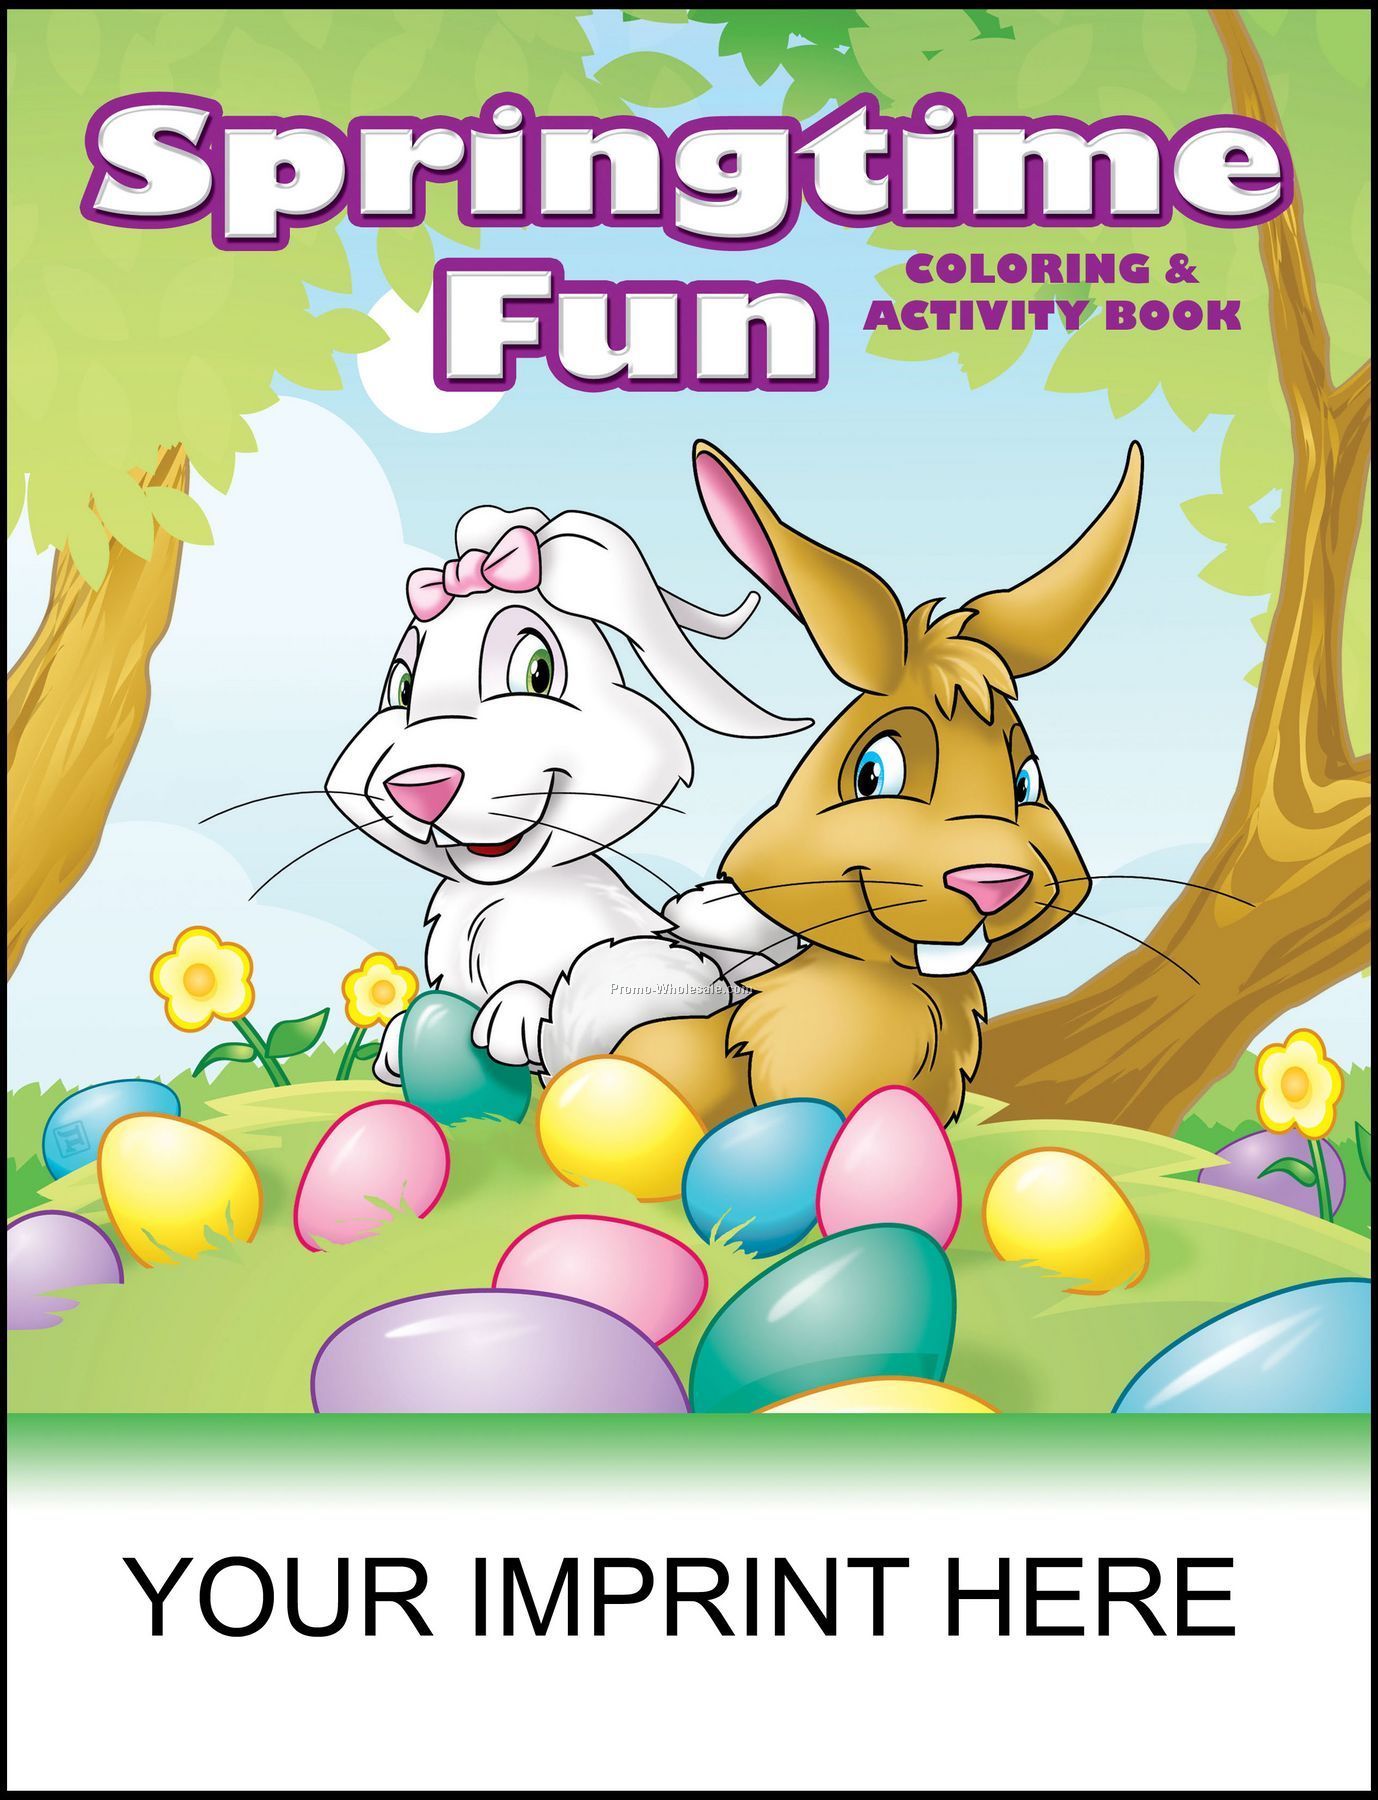 8-3/8"x10-7/8" Springtime Fun Coloring & Activity Book